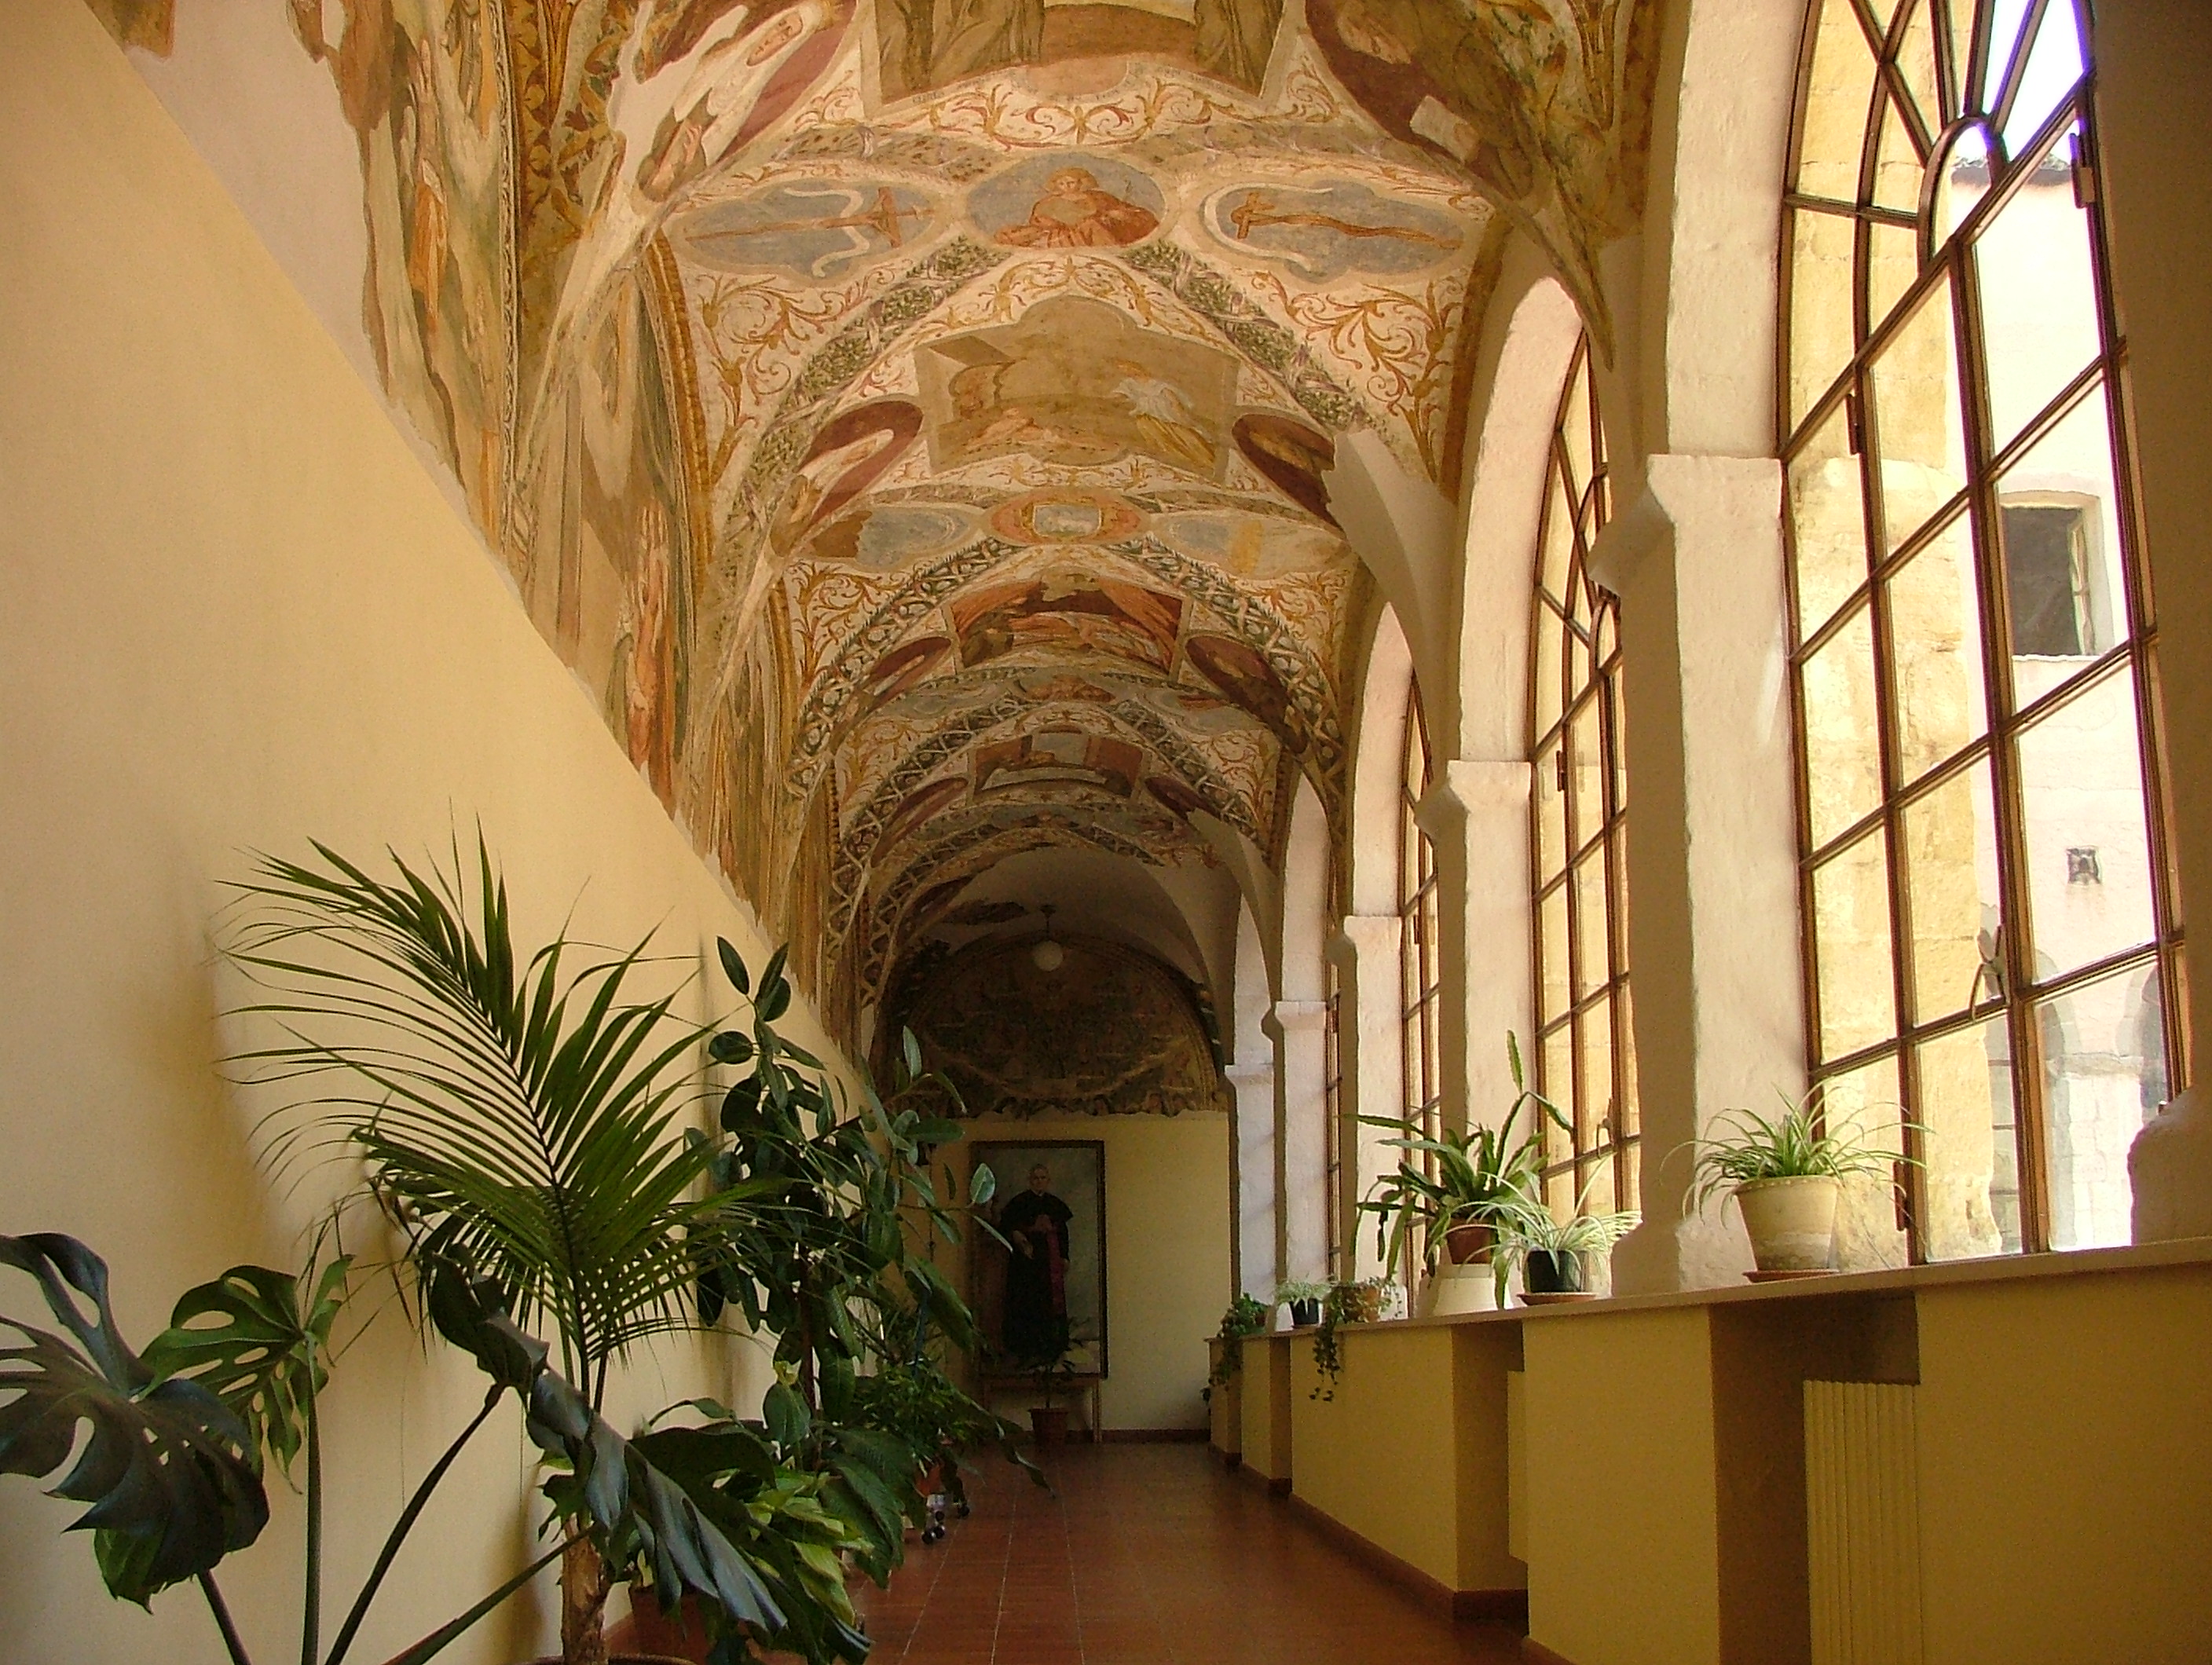 Rocco Stasi, Convento di Sant'Antonio di Padova - quadriportico affrescato, 2008, fotografia digitale